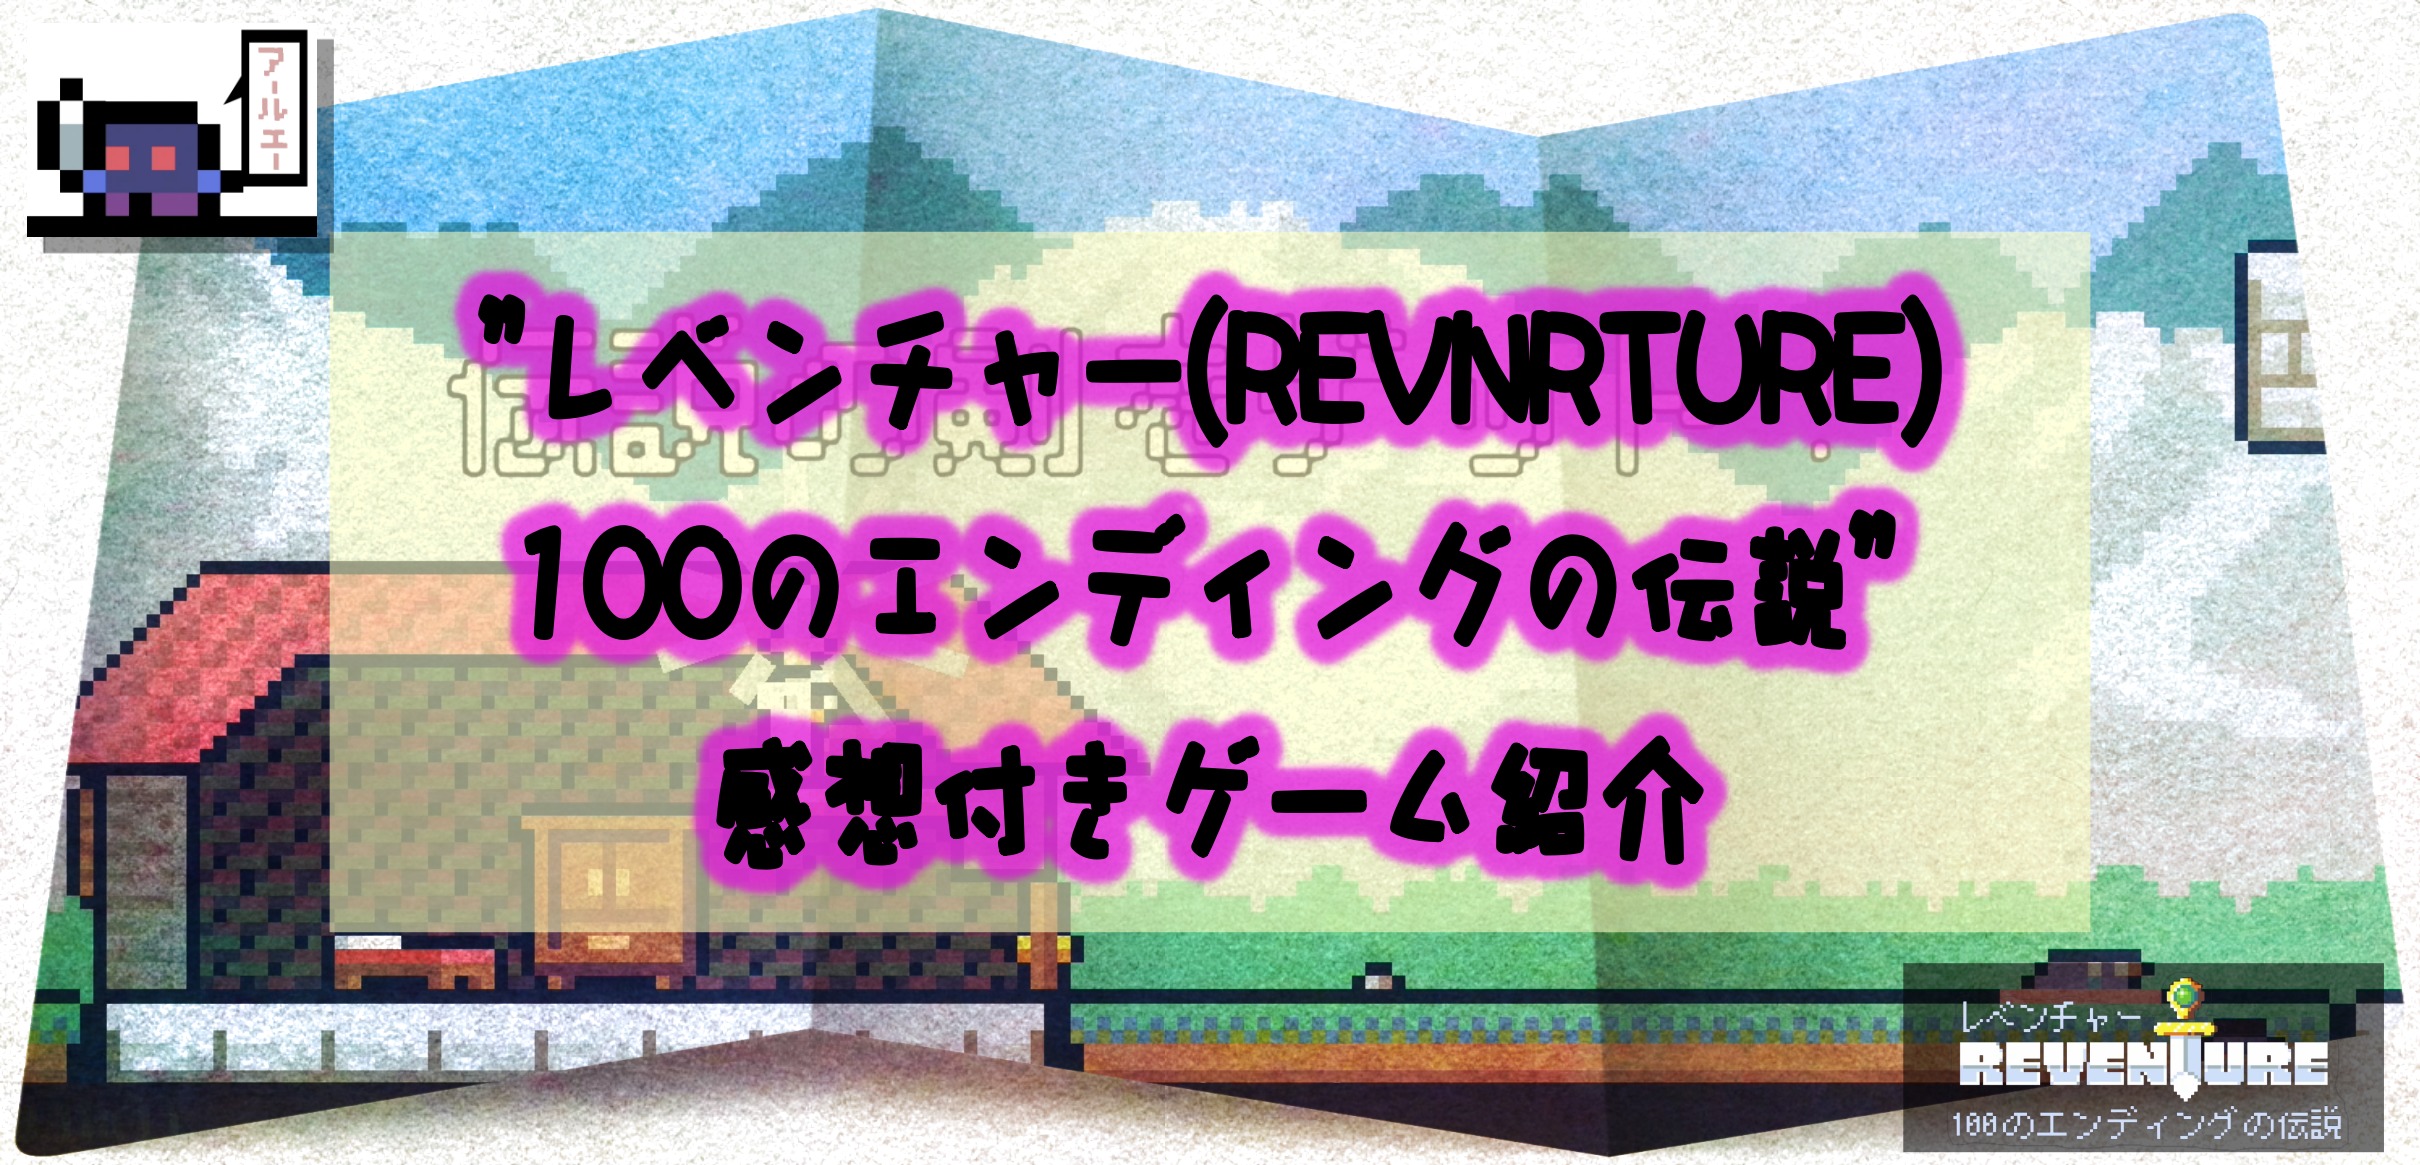 感想付きゲーム紹介 レベンチャー Reventure 100のエンディングの伝説 アールエーログ